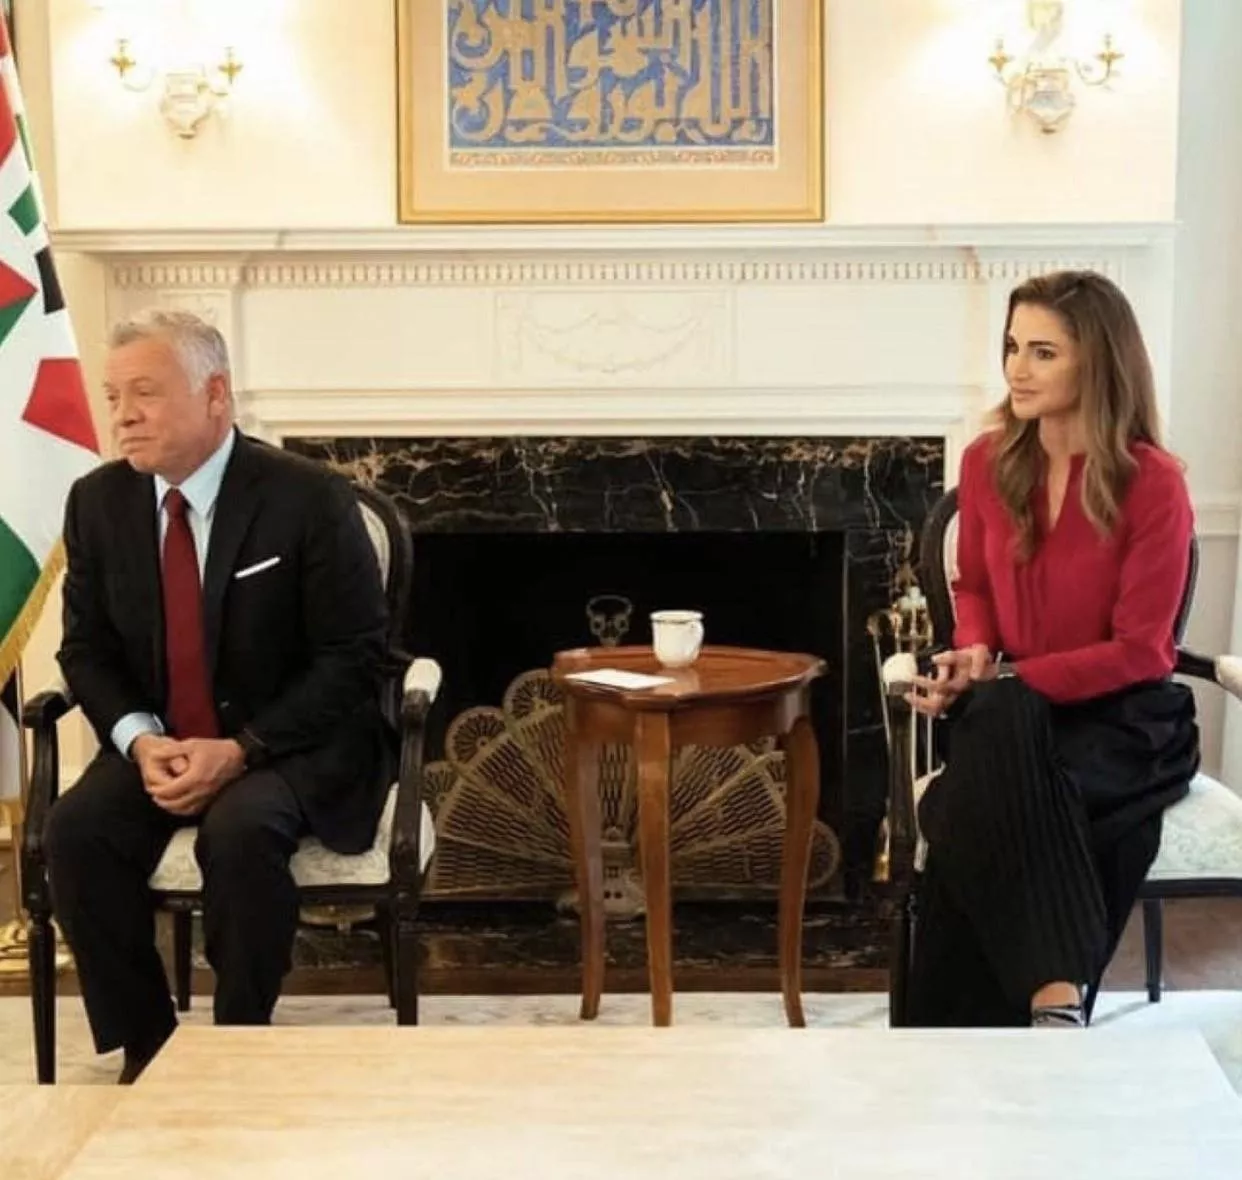 الملكة رانيا تخطف الأنظار بلوكات أنيقة وراقية في الولايات المتحدة الأميركية